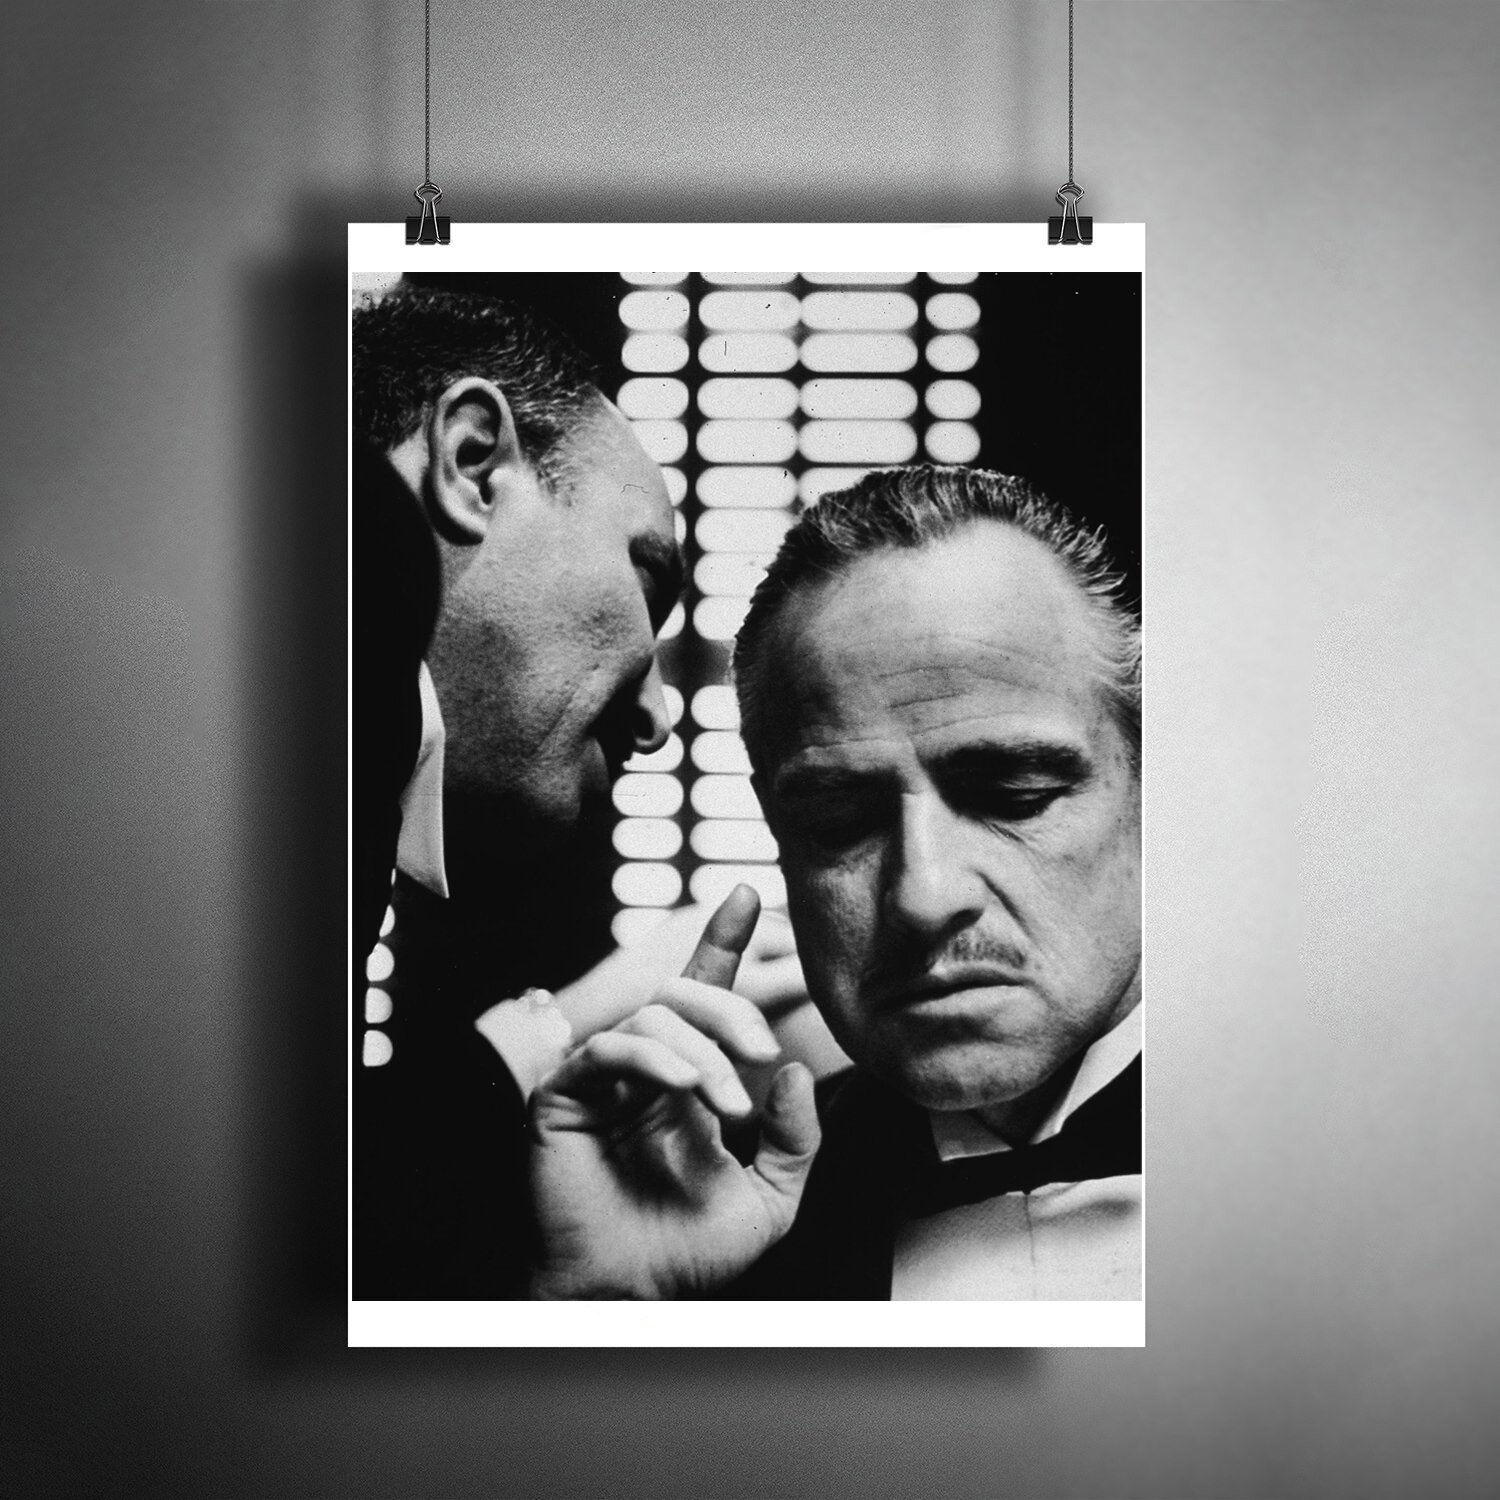 Постер плакат для интерьера Фильм: Крёстный отец. Дон Вито Корлеоне. Актёр Марлон Брандо. The GodFather/ Декор дома офиса комнаты A3 (297 x 420 мм)